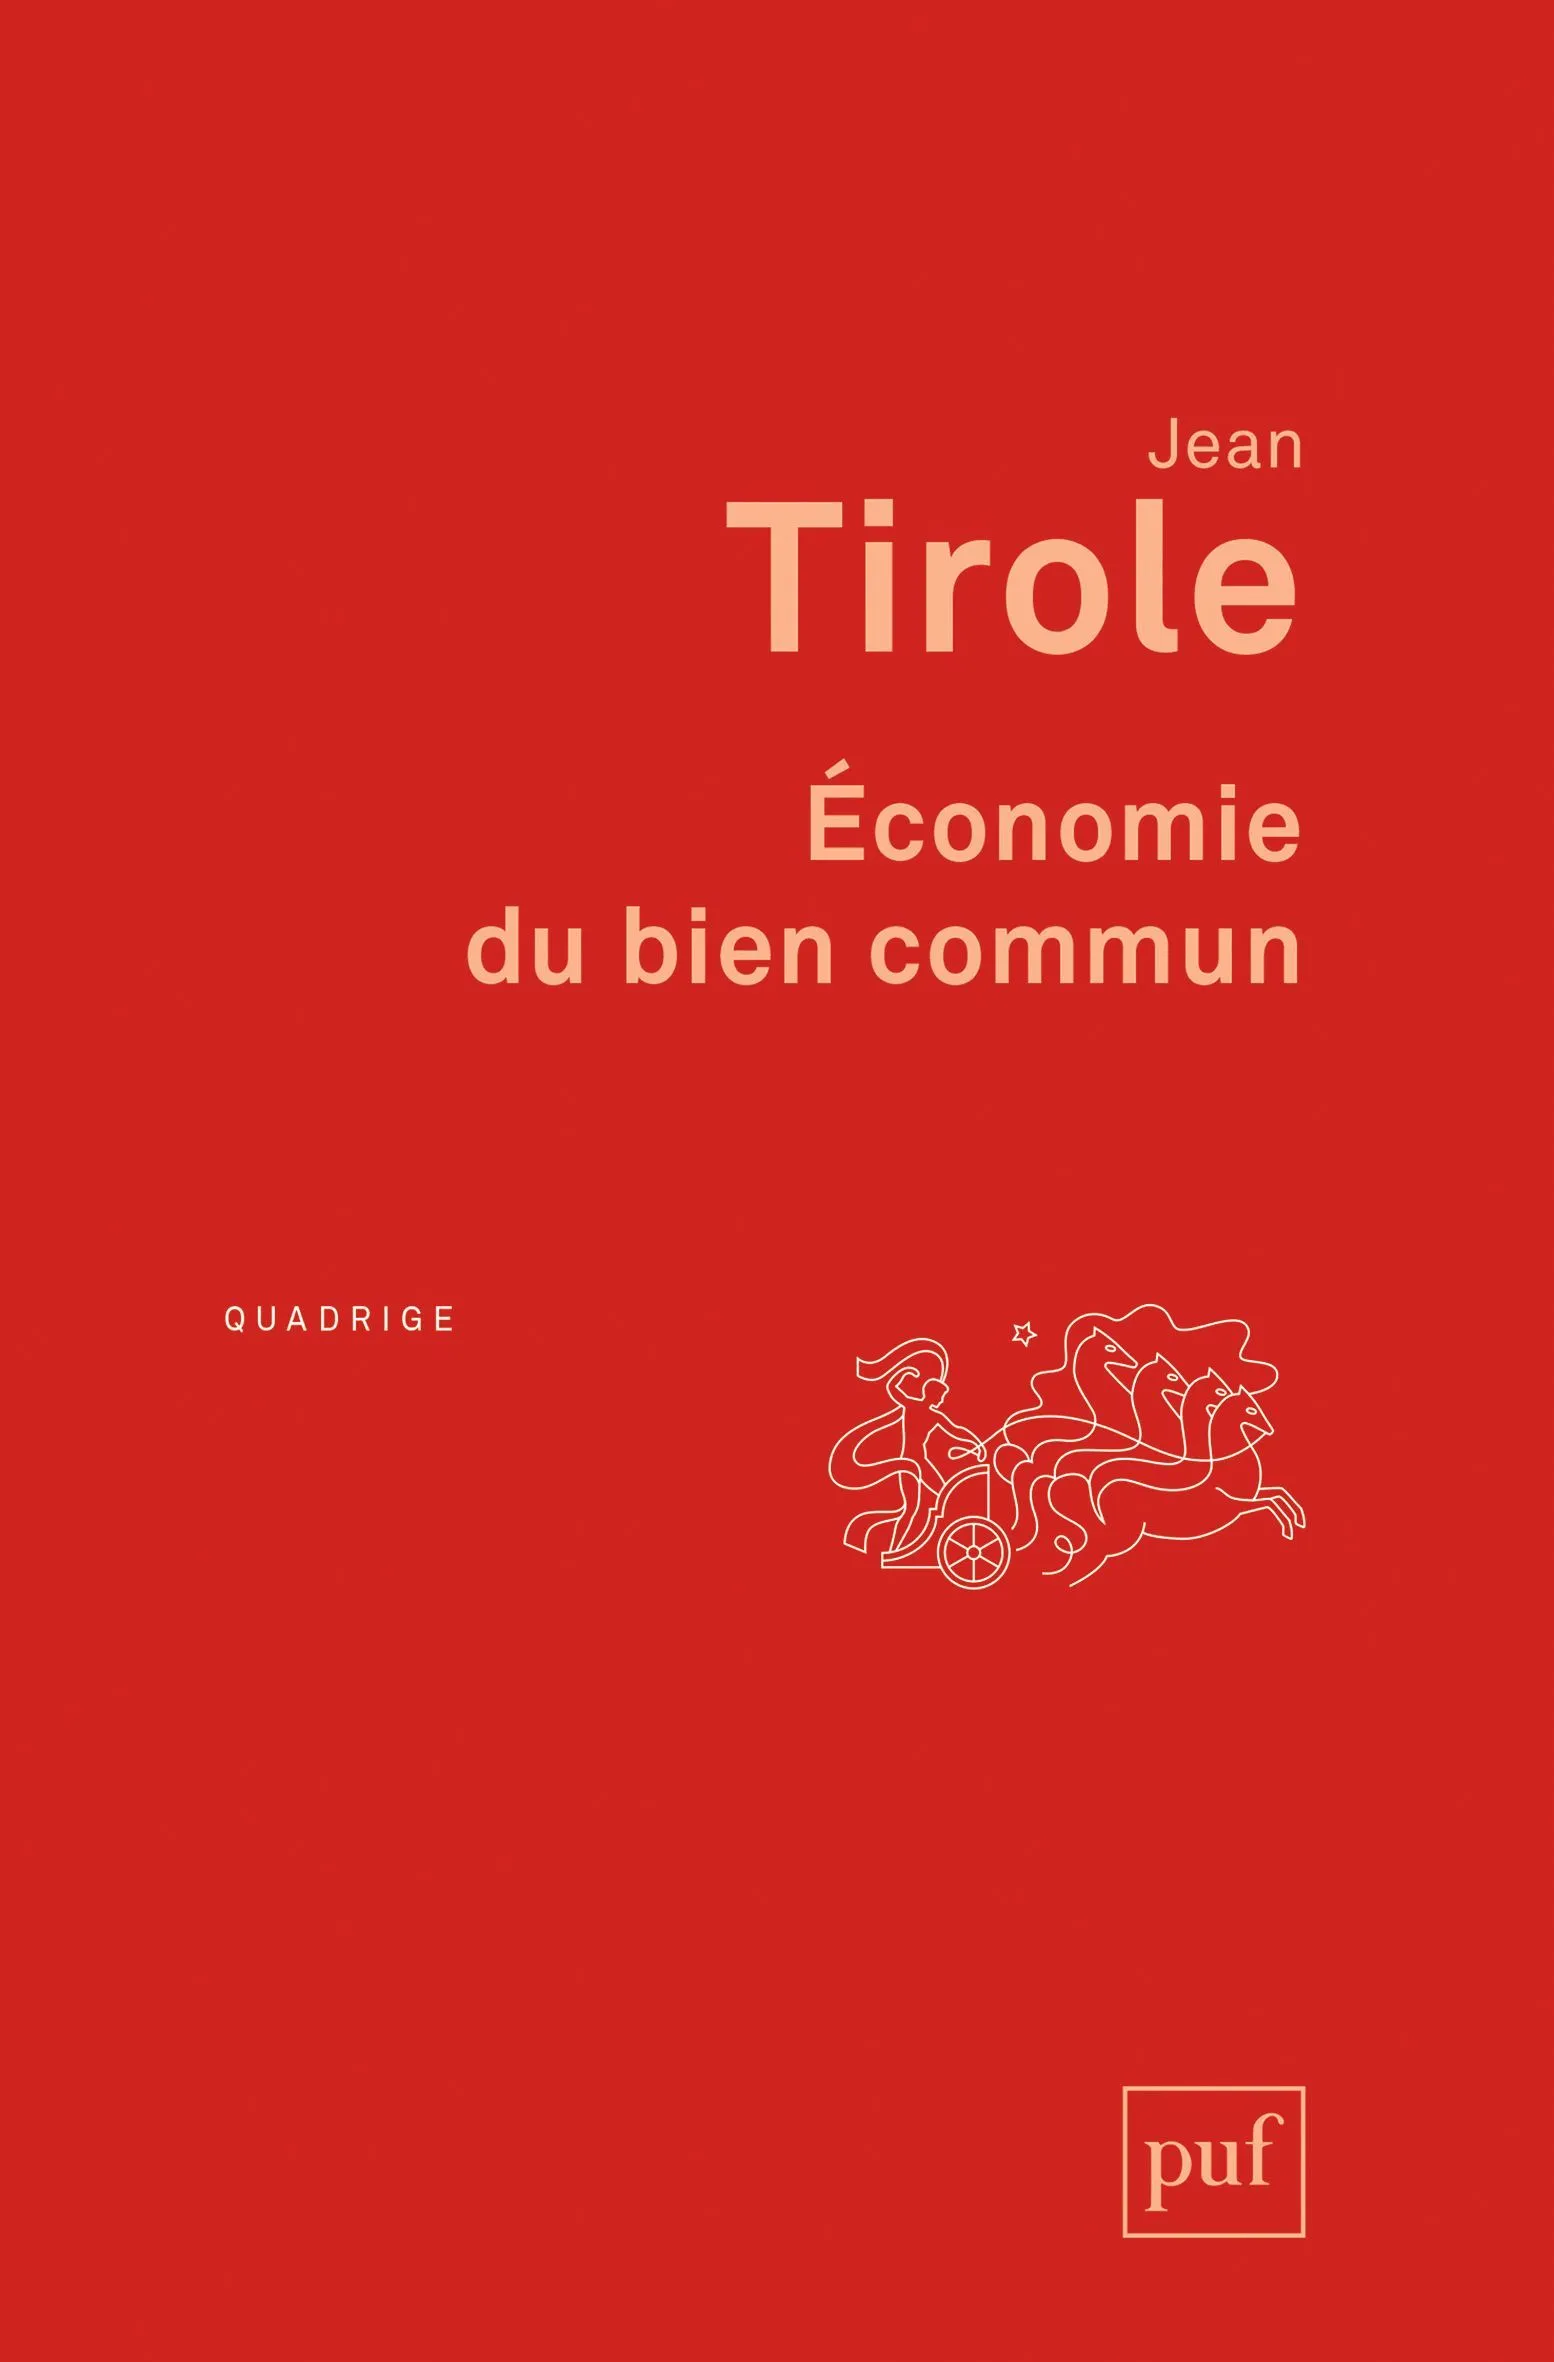 Jean Tirole Économie du bien commun, PUF, 2016